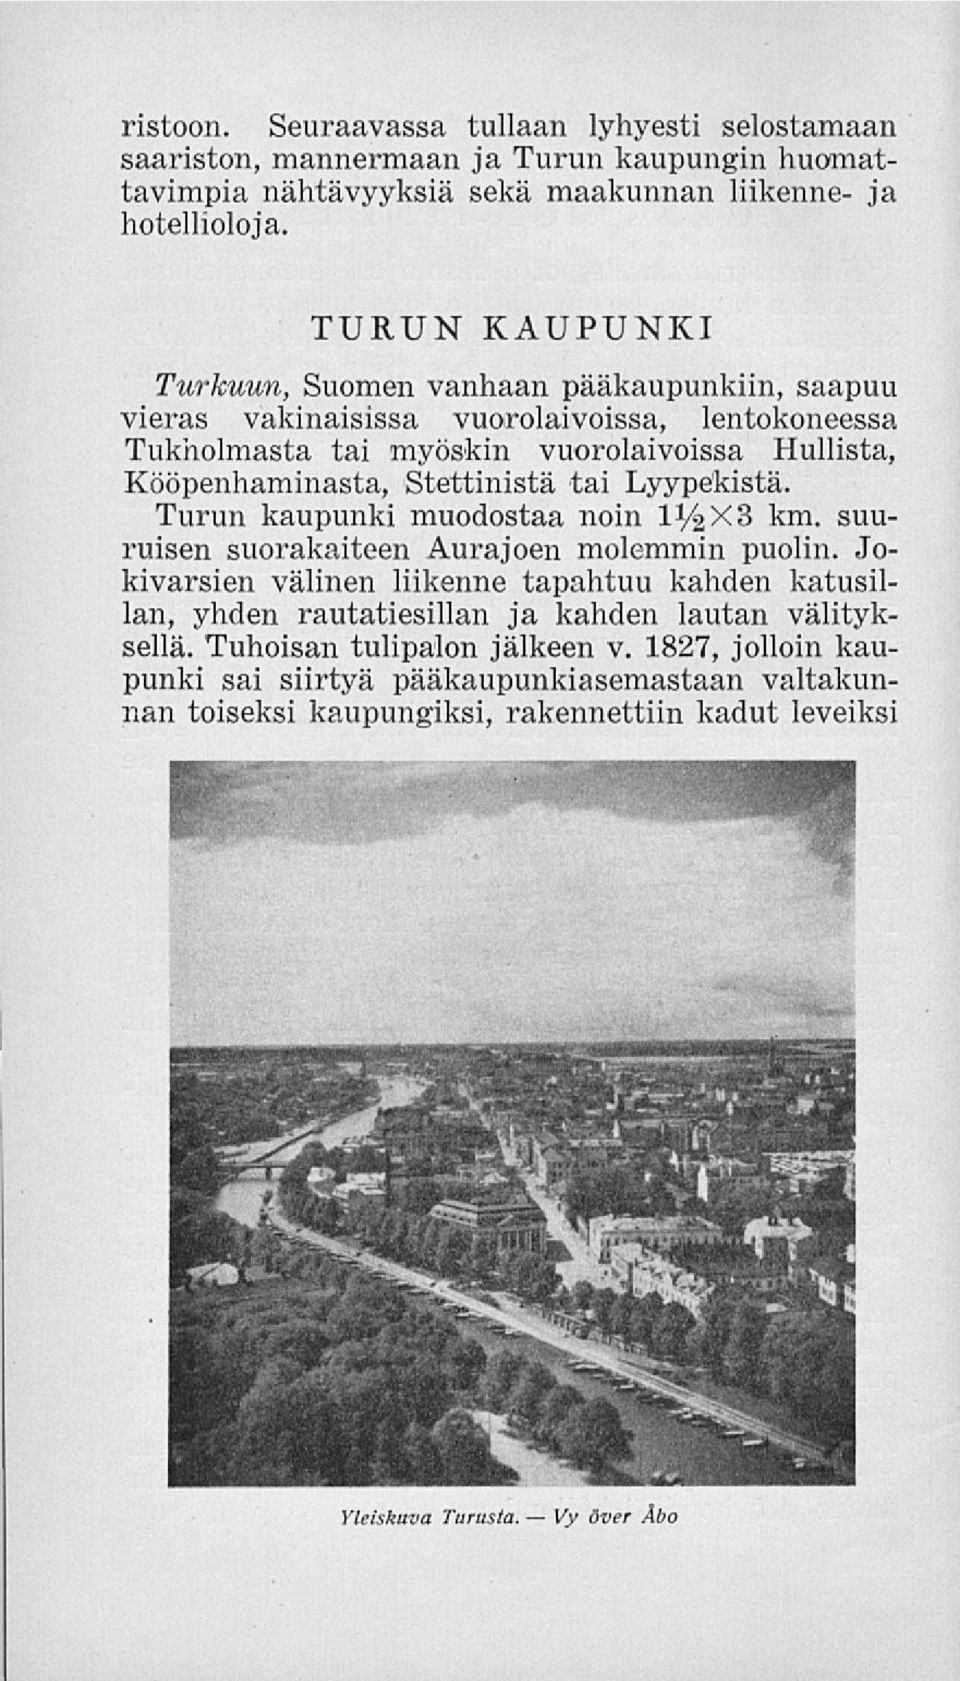 Stettinistä tai Lyypekistä. Turun kaupunki muodostaa noin IV&X3 km. suuruisen suorakaiteen Aurajoen molemmin puolin.